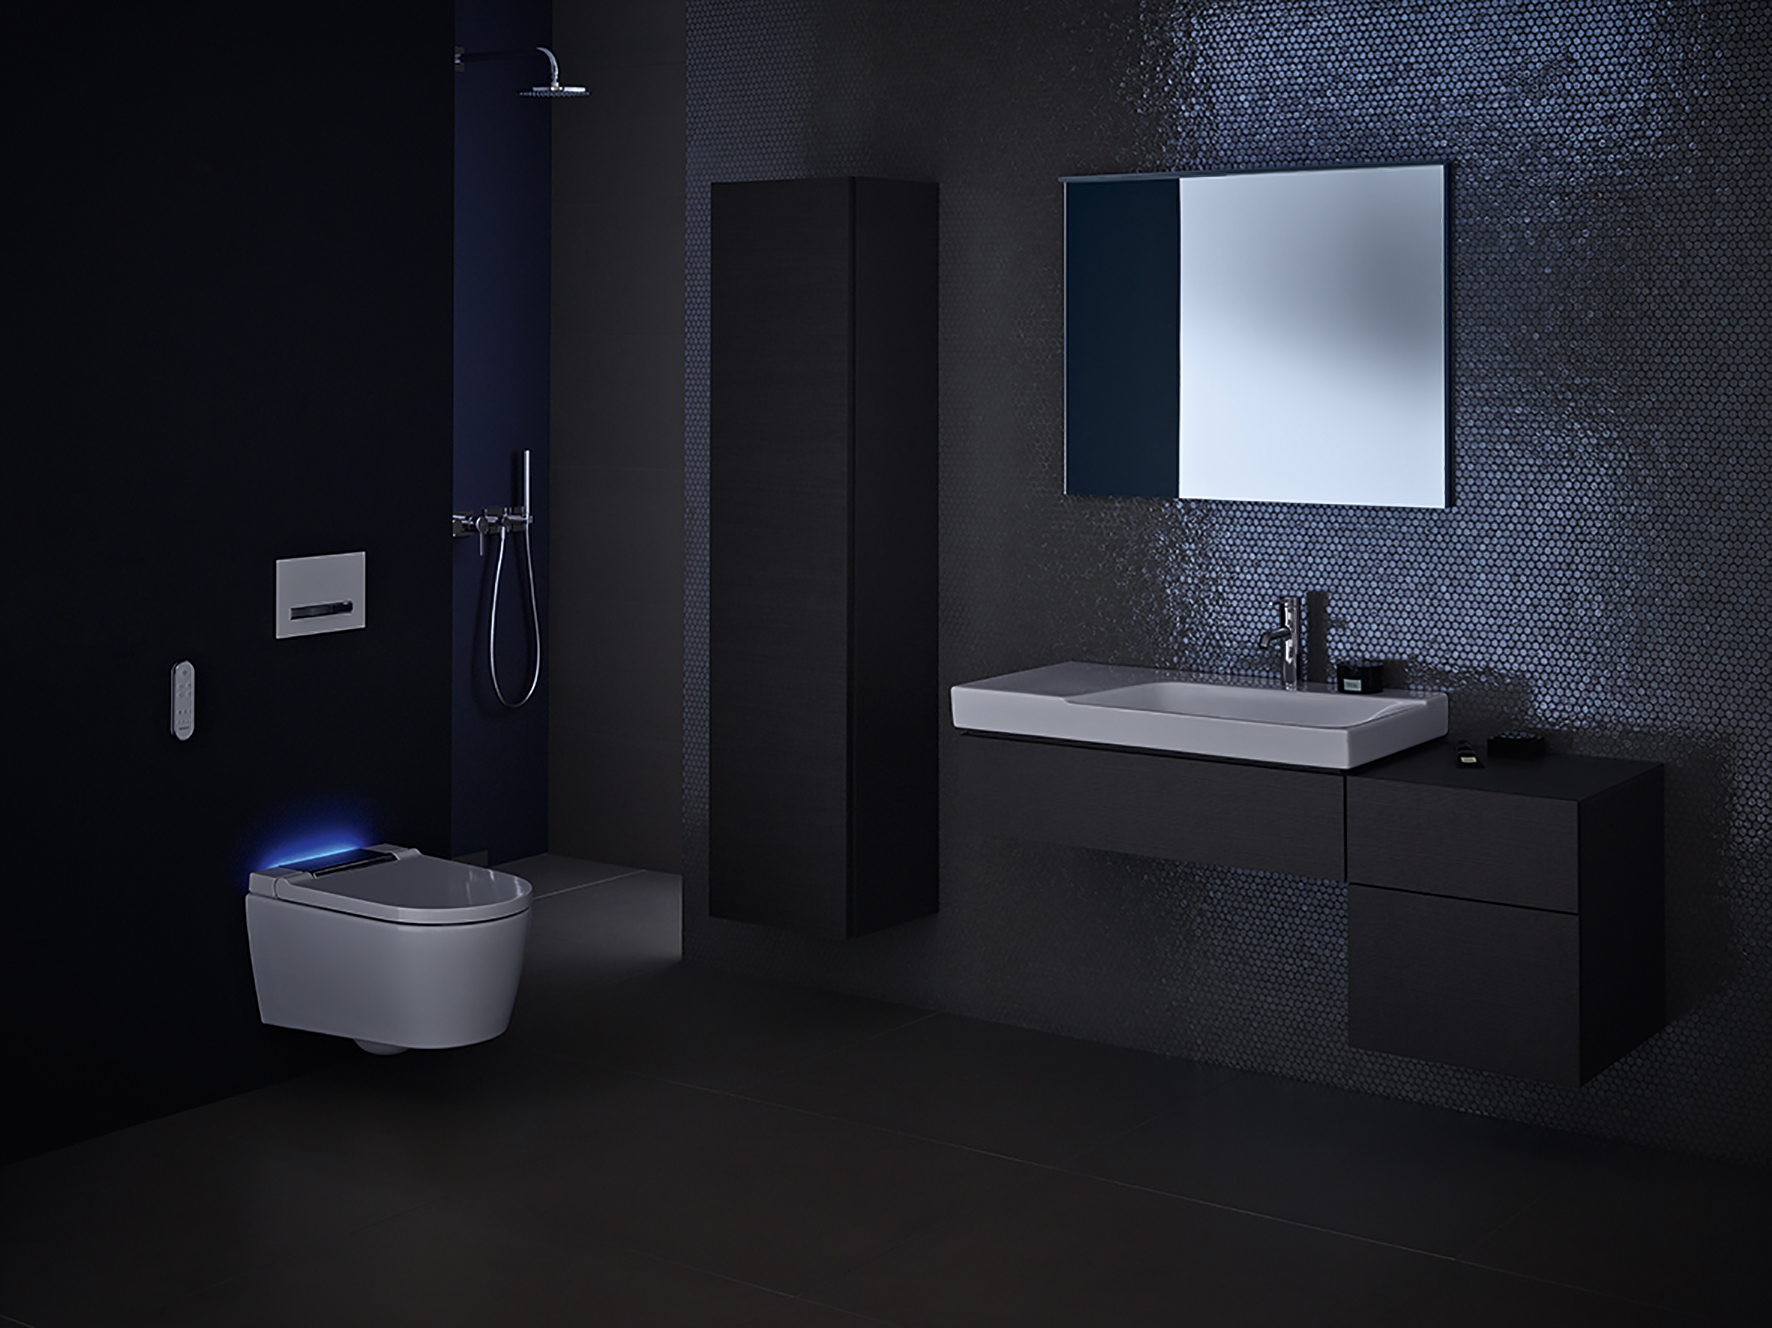 V sprchovacom WC Geberit AquaClean Sela sú ukryté technológie, ktoré zaručia vysoký štandard čistoty a pohodlia.